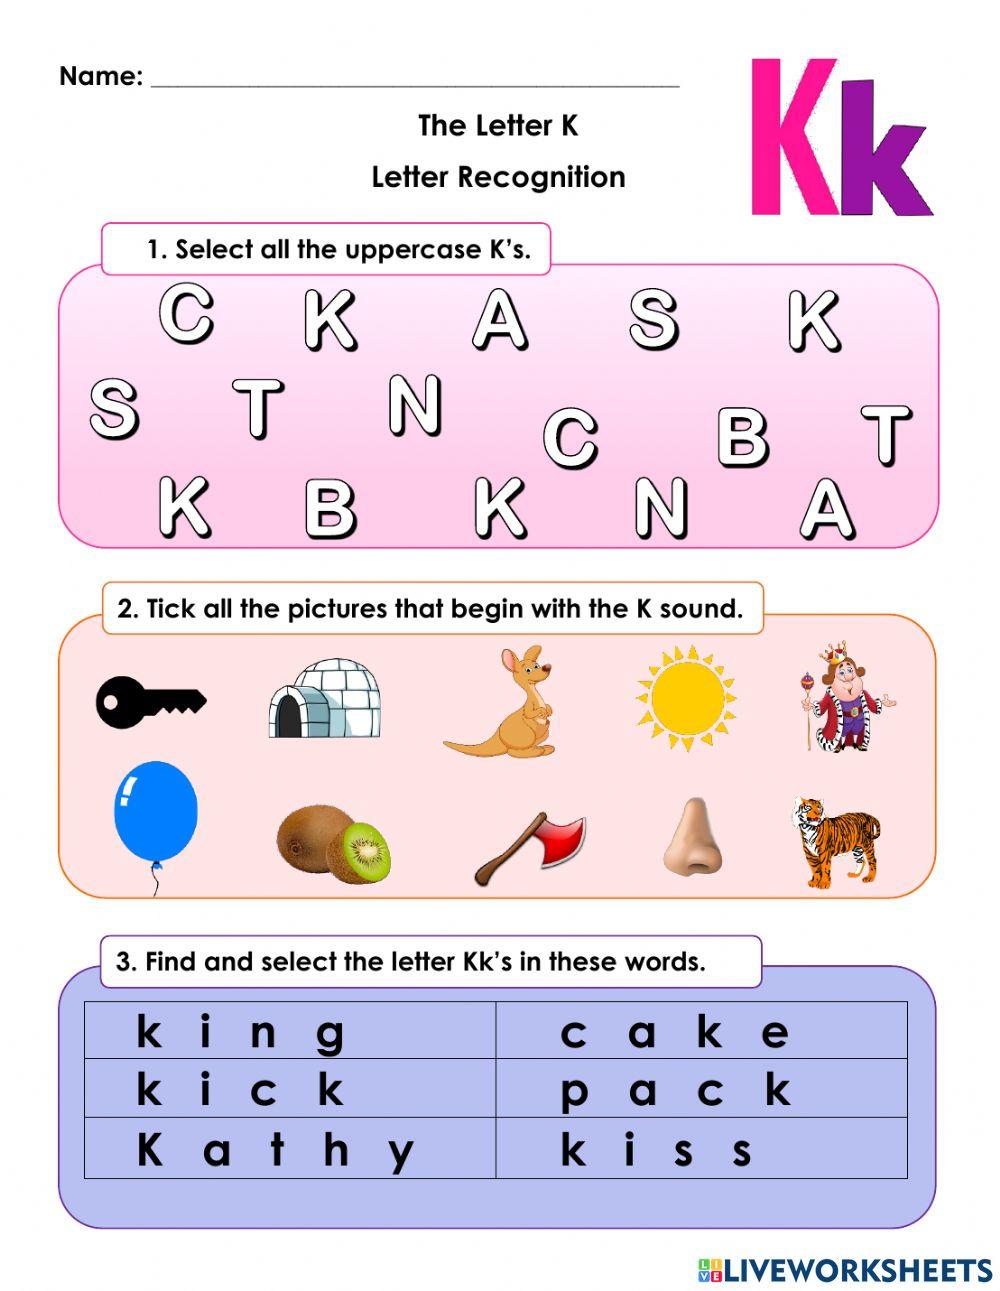 Letter K Recognition